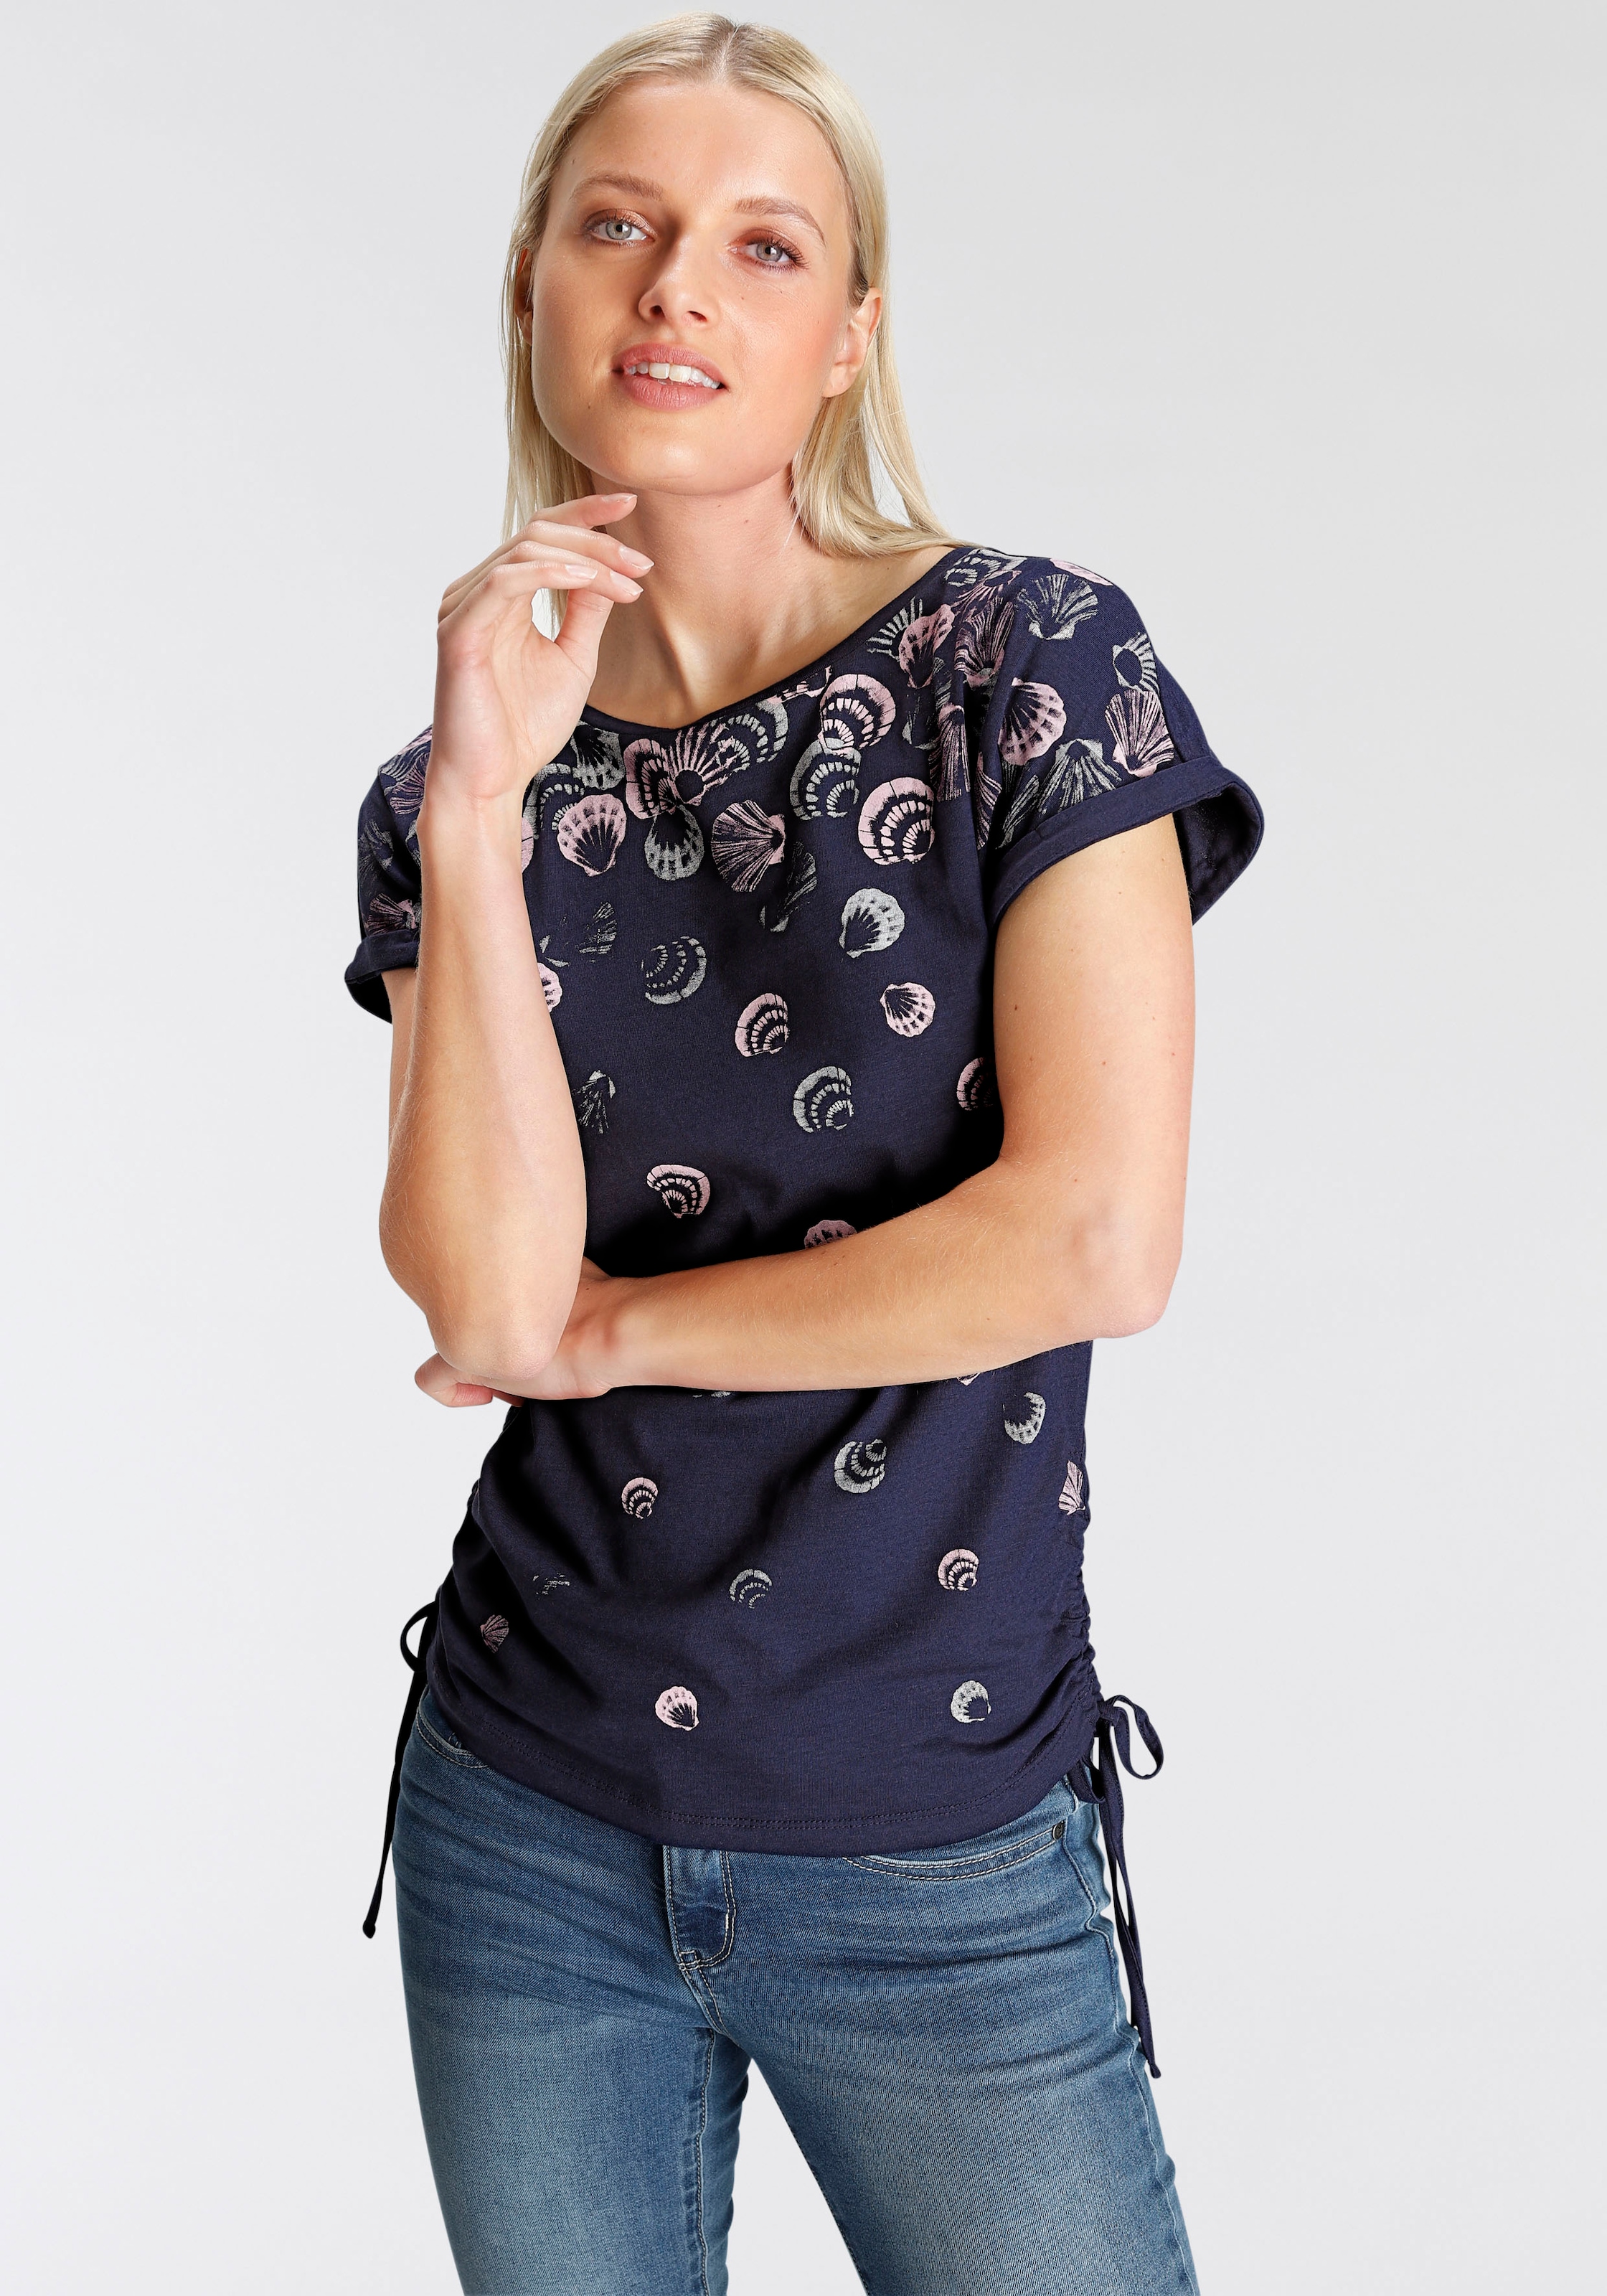 DELMAO T-Shirt, Druckdesigns verschiedenen OTTO NEUE - in Raffungen online seitlichen mit bei MARKE